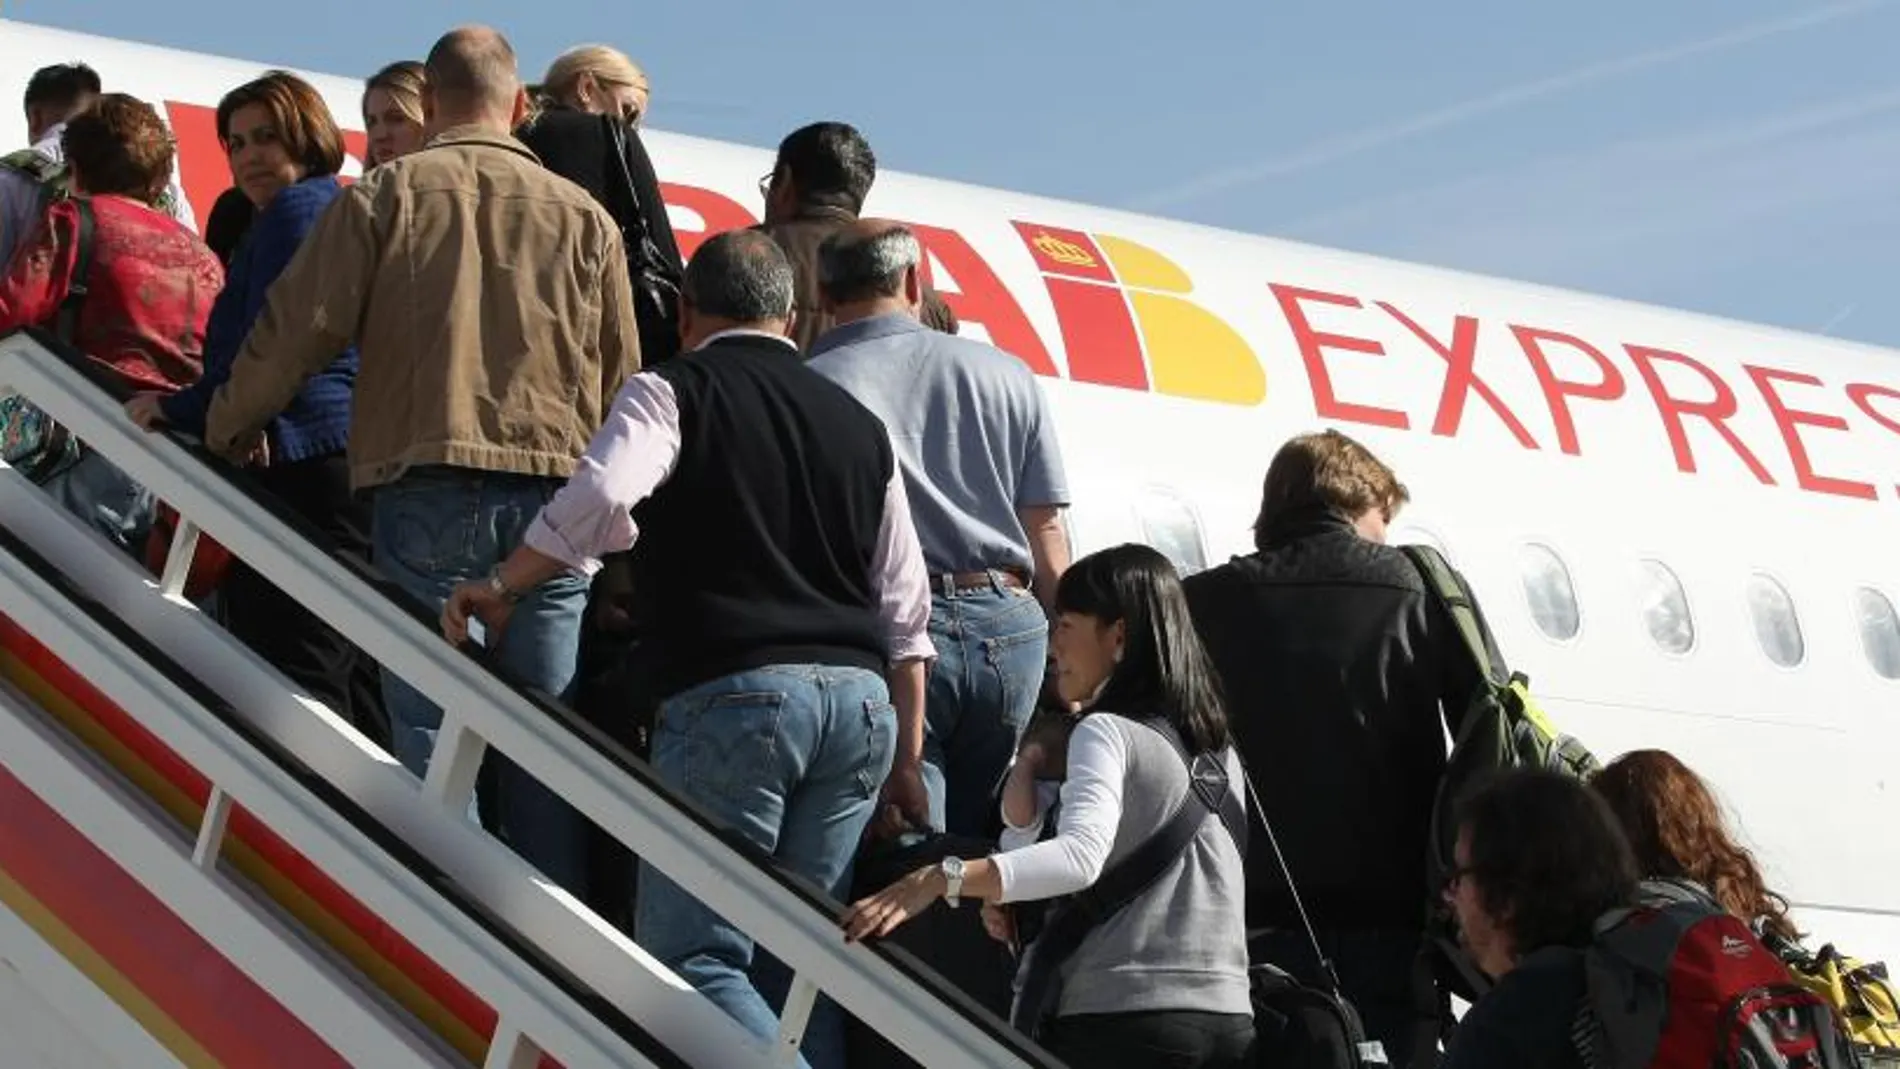 Iberia Express alcanza los cinco millones de pasajeros desde su lanzamiento